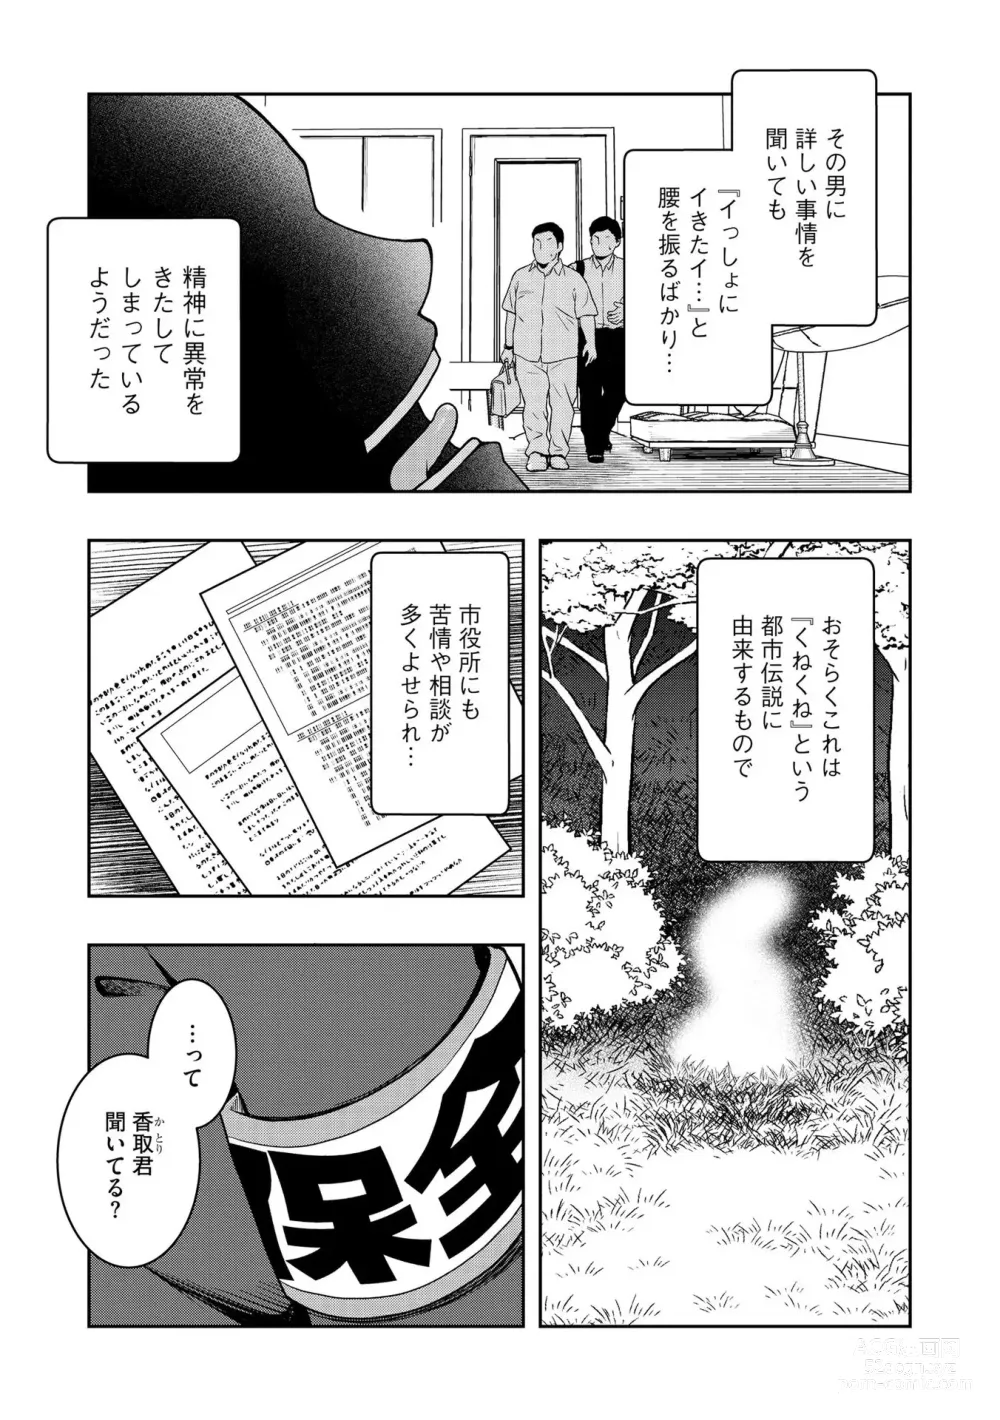 Page 6 of manga Kai-In Hontou wa Yarashii Toshi Densetsu